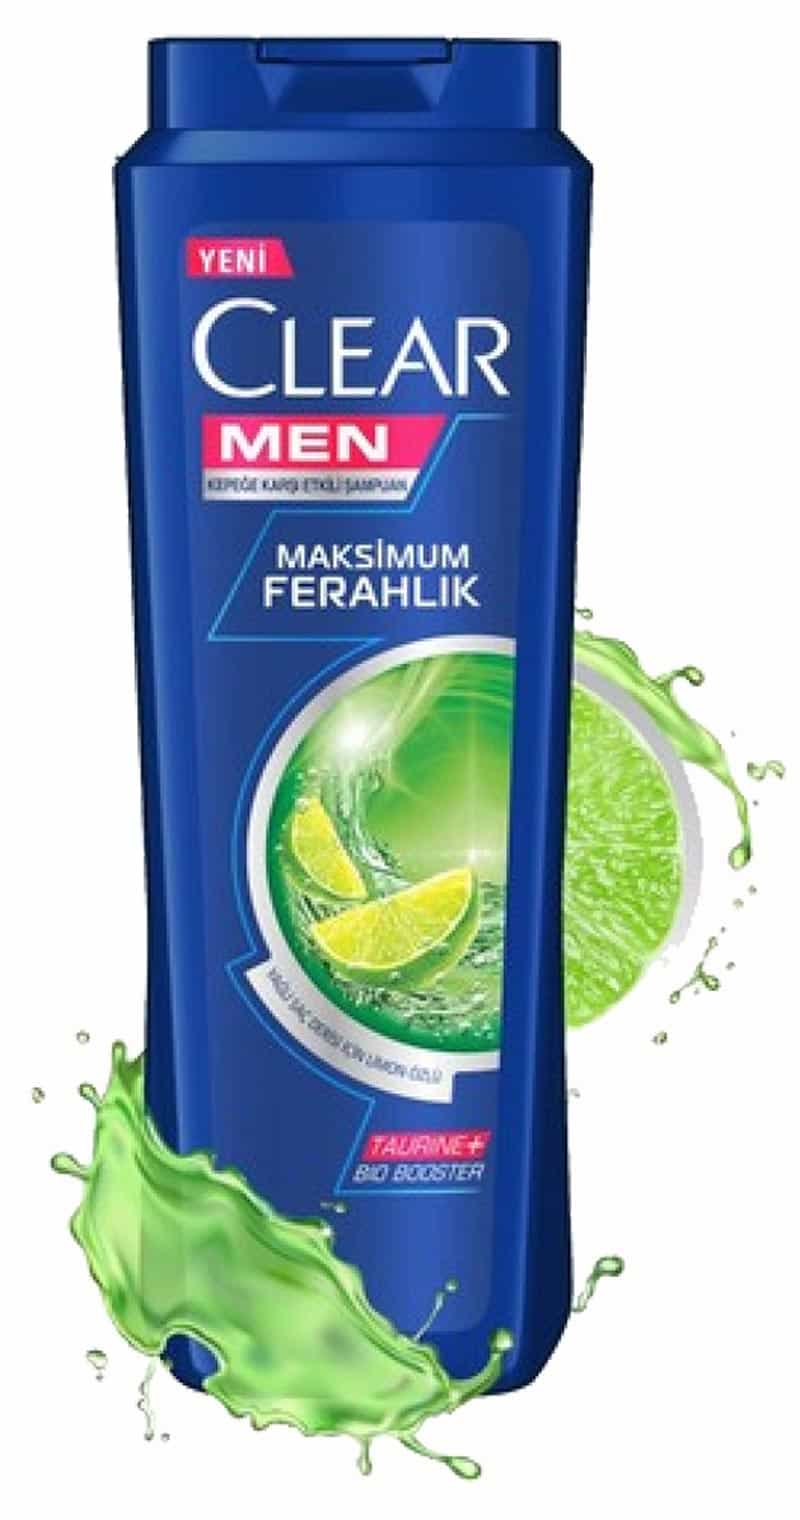 خرید شامپو ضد شوره مردانه کلیر لیمویی CLEAR MAKSIMUM FERAHLIK